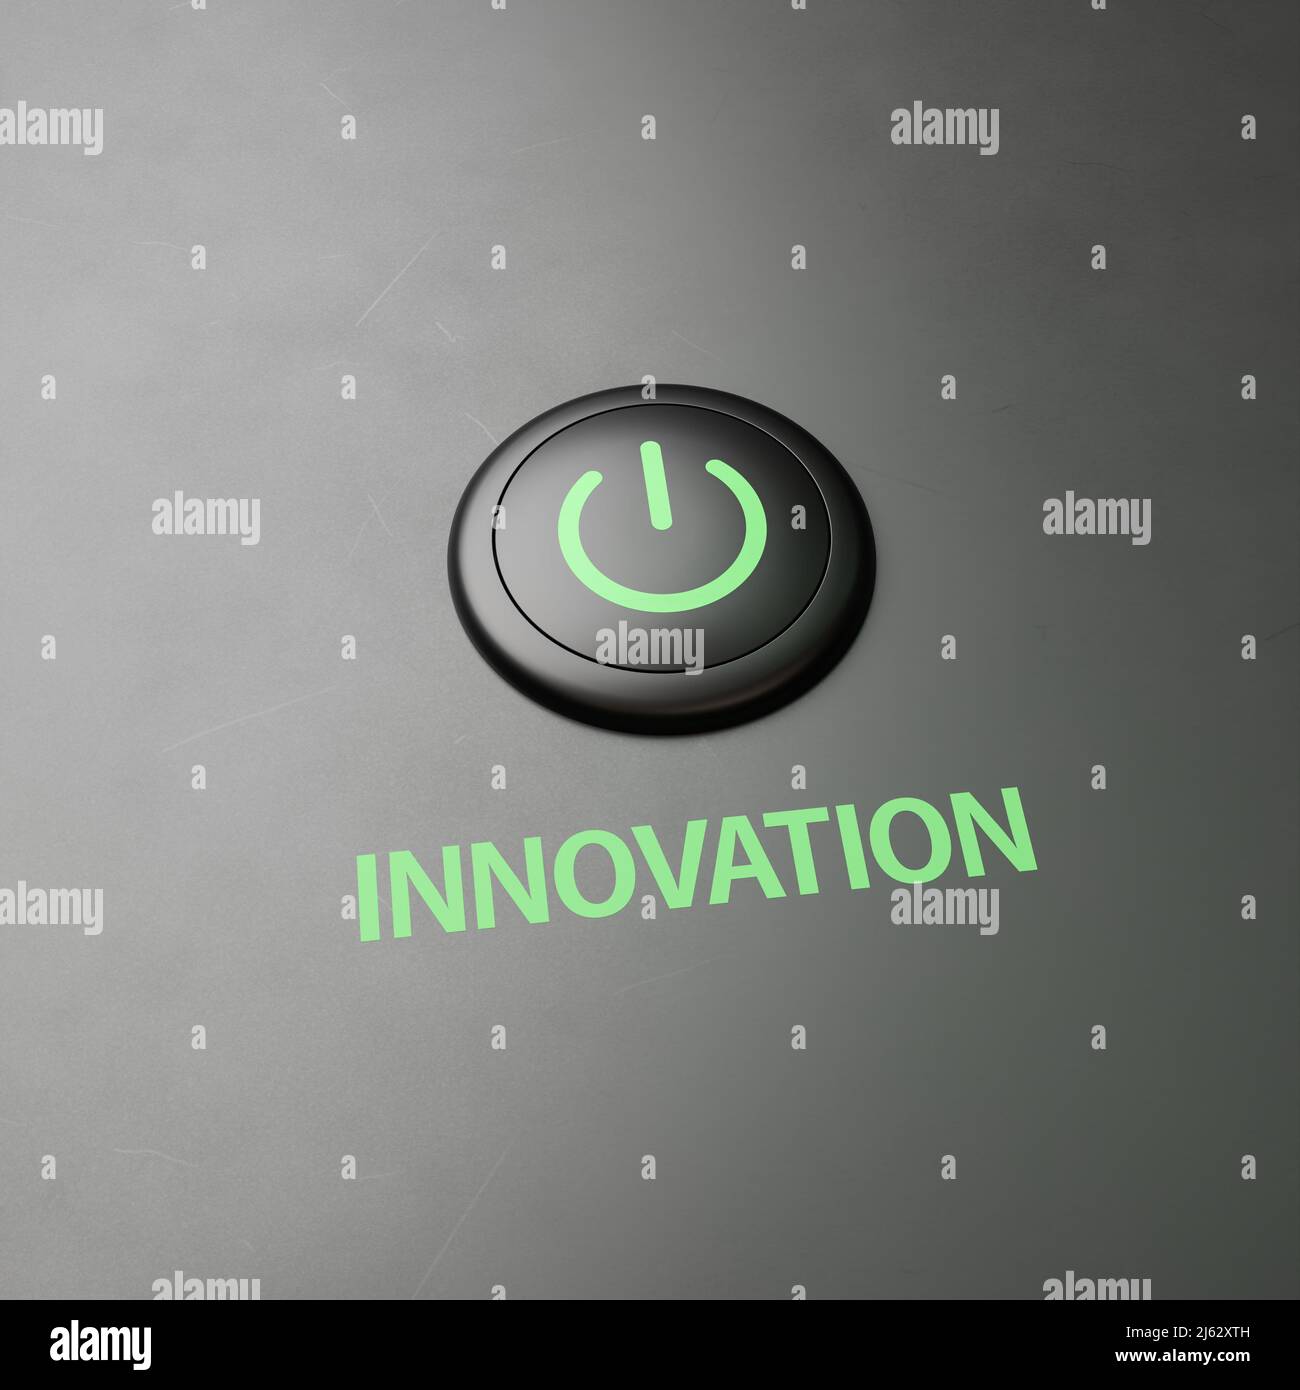 Schwarzer Knopf mit dem Wort „Innovation“ als Label - Konzept zur Umsetzung von Maßnahmen zur Umstellung auf Innovation. Platz zum besseren Zuschneiden kopieren Stockfoto